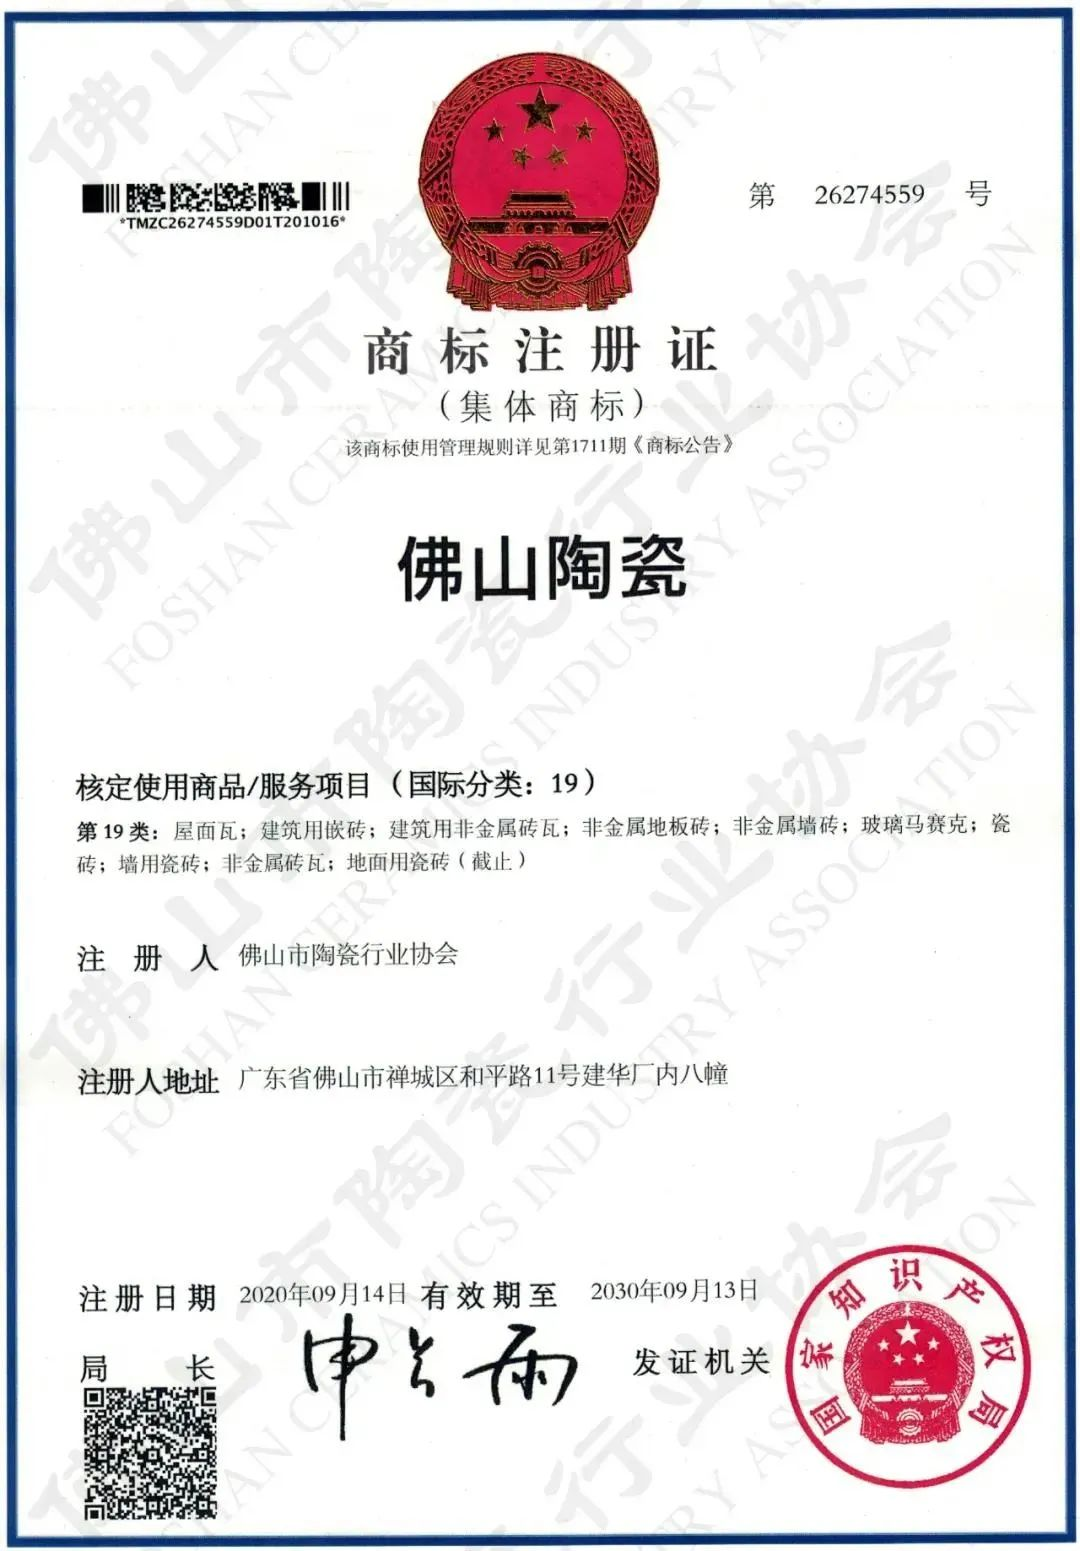 权威认证，品质保障 | bob体育官方app下载
上榜首批“佛山陶瓷”集体商标授权品牌(图4)